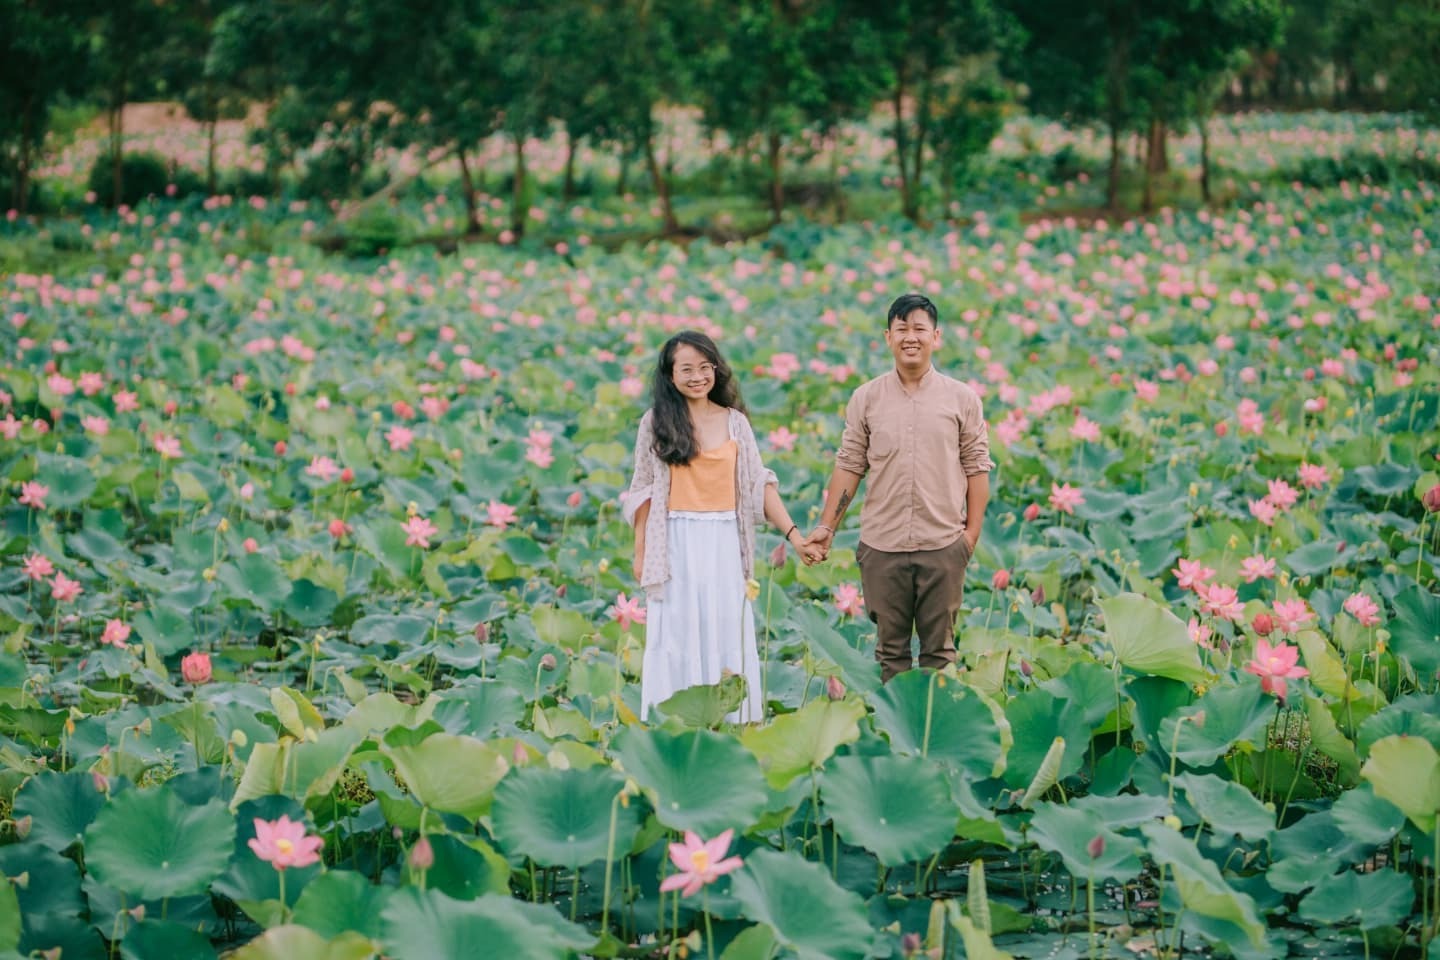 Quen nhau qua mạng xã hội, cặp đôi 4 năm nắm tay đi hết các tỉnh thành Việt Nam thỏa đam mê du lịch cùng nhau